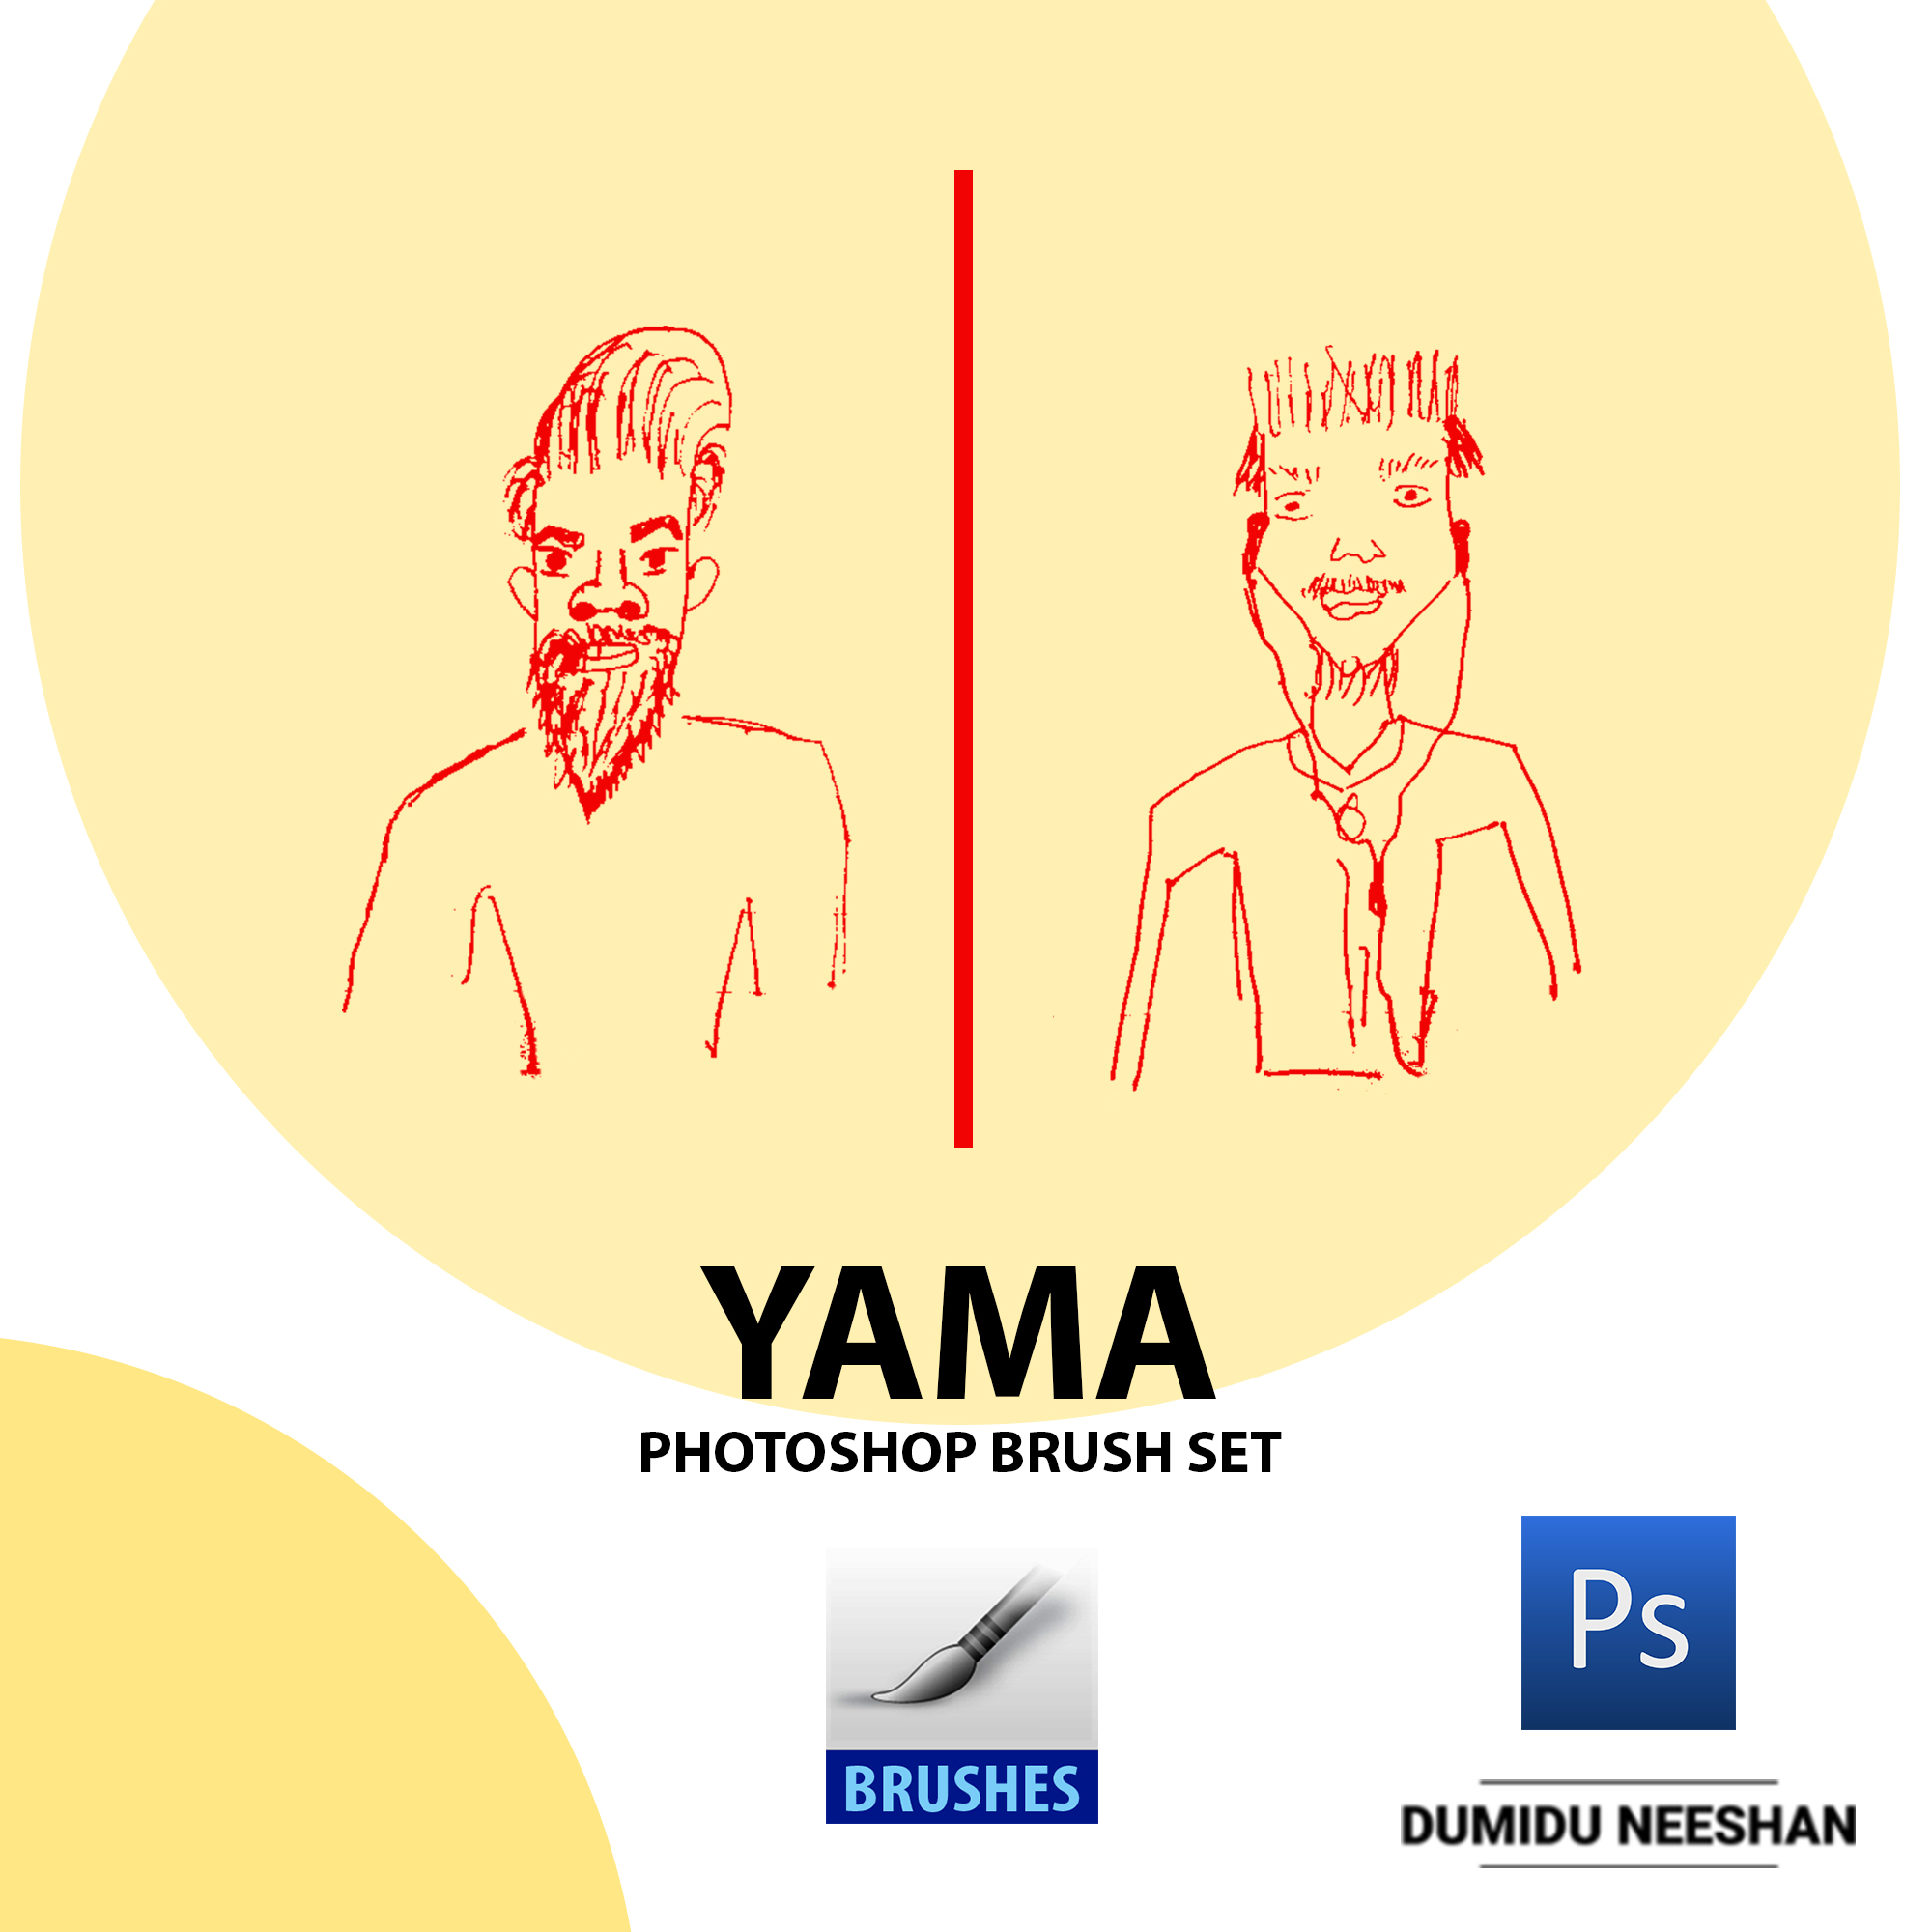 YAMA - Photoshop Brushes By Dumidu Neeshan